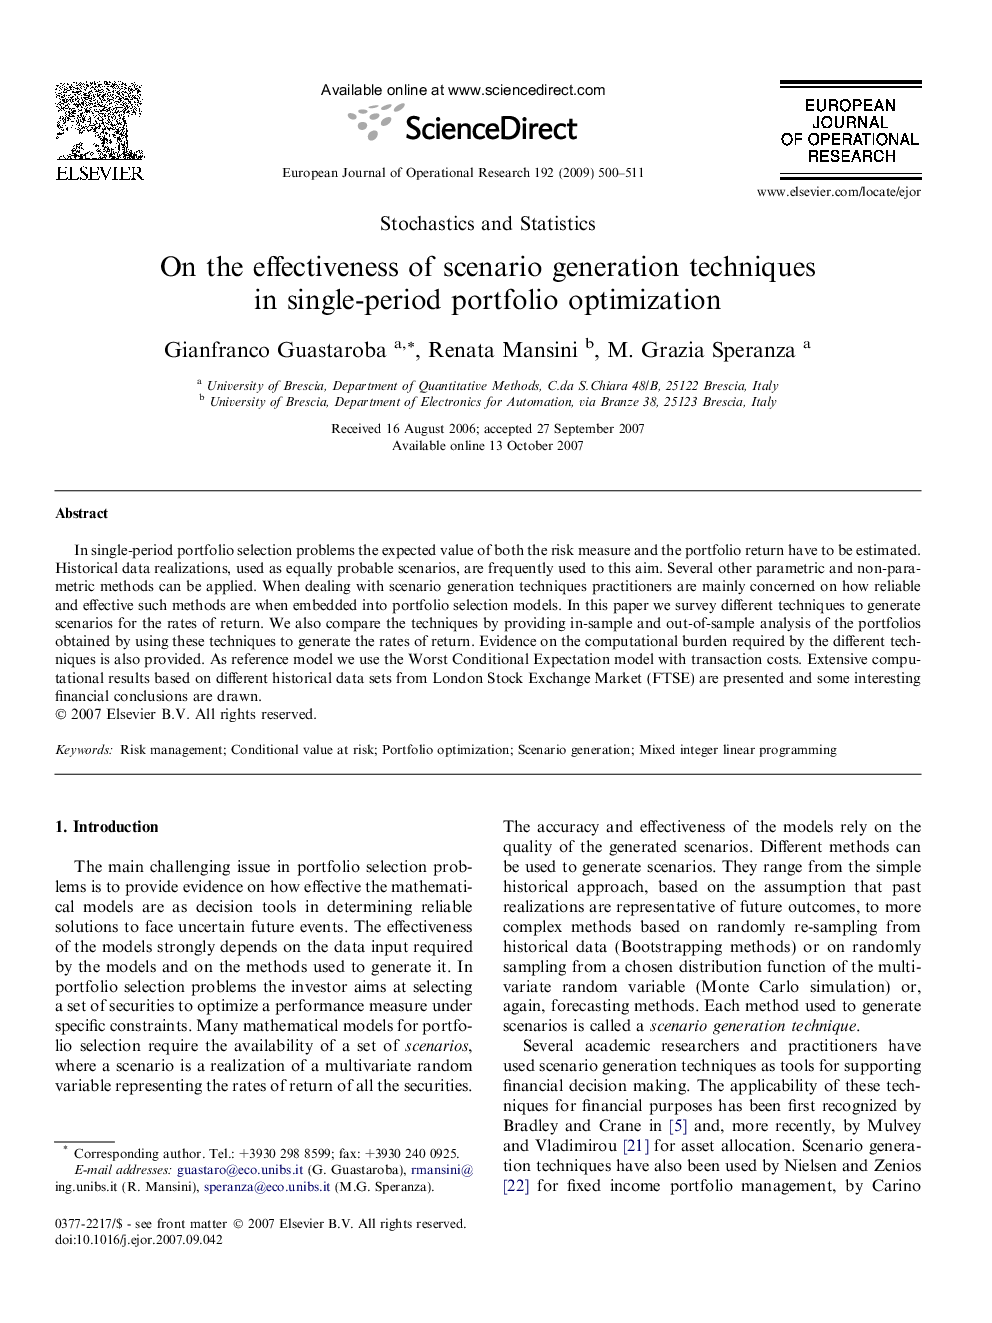 On the effectiveness of scenario generation techniques in single-period portfolio optimization